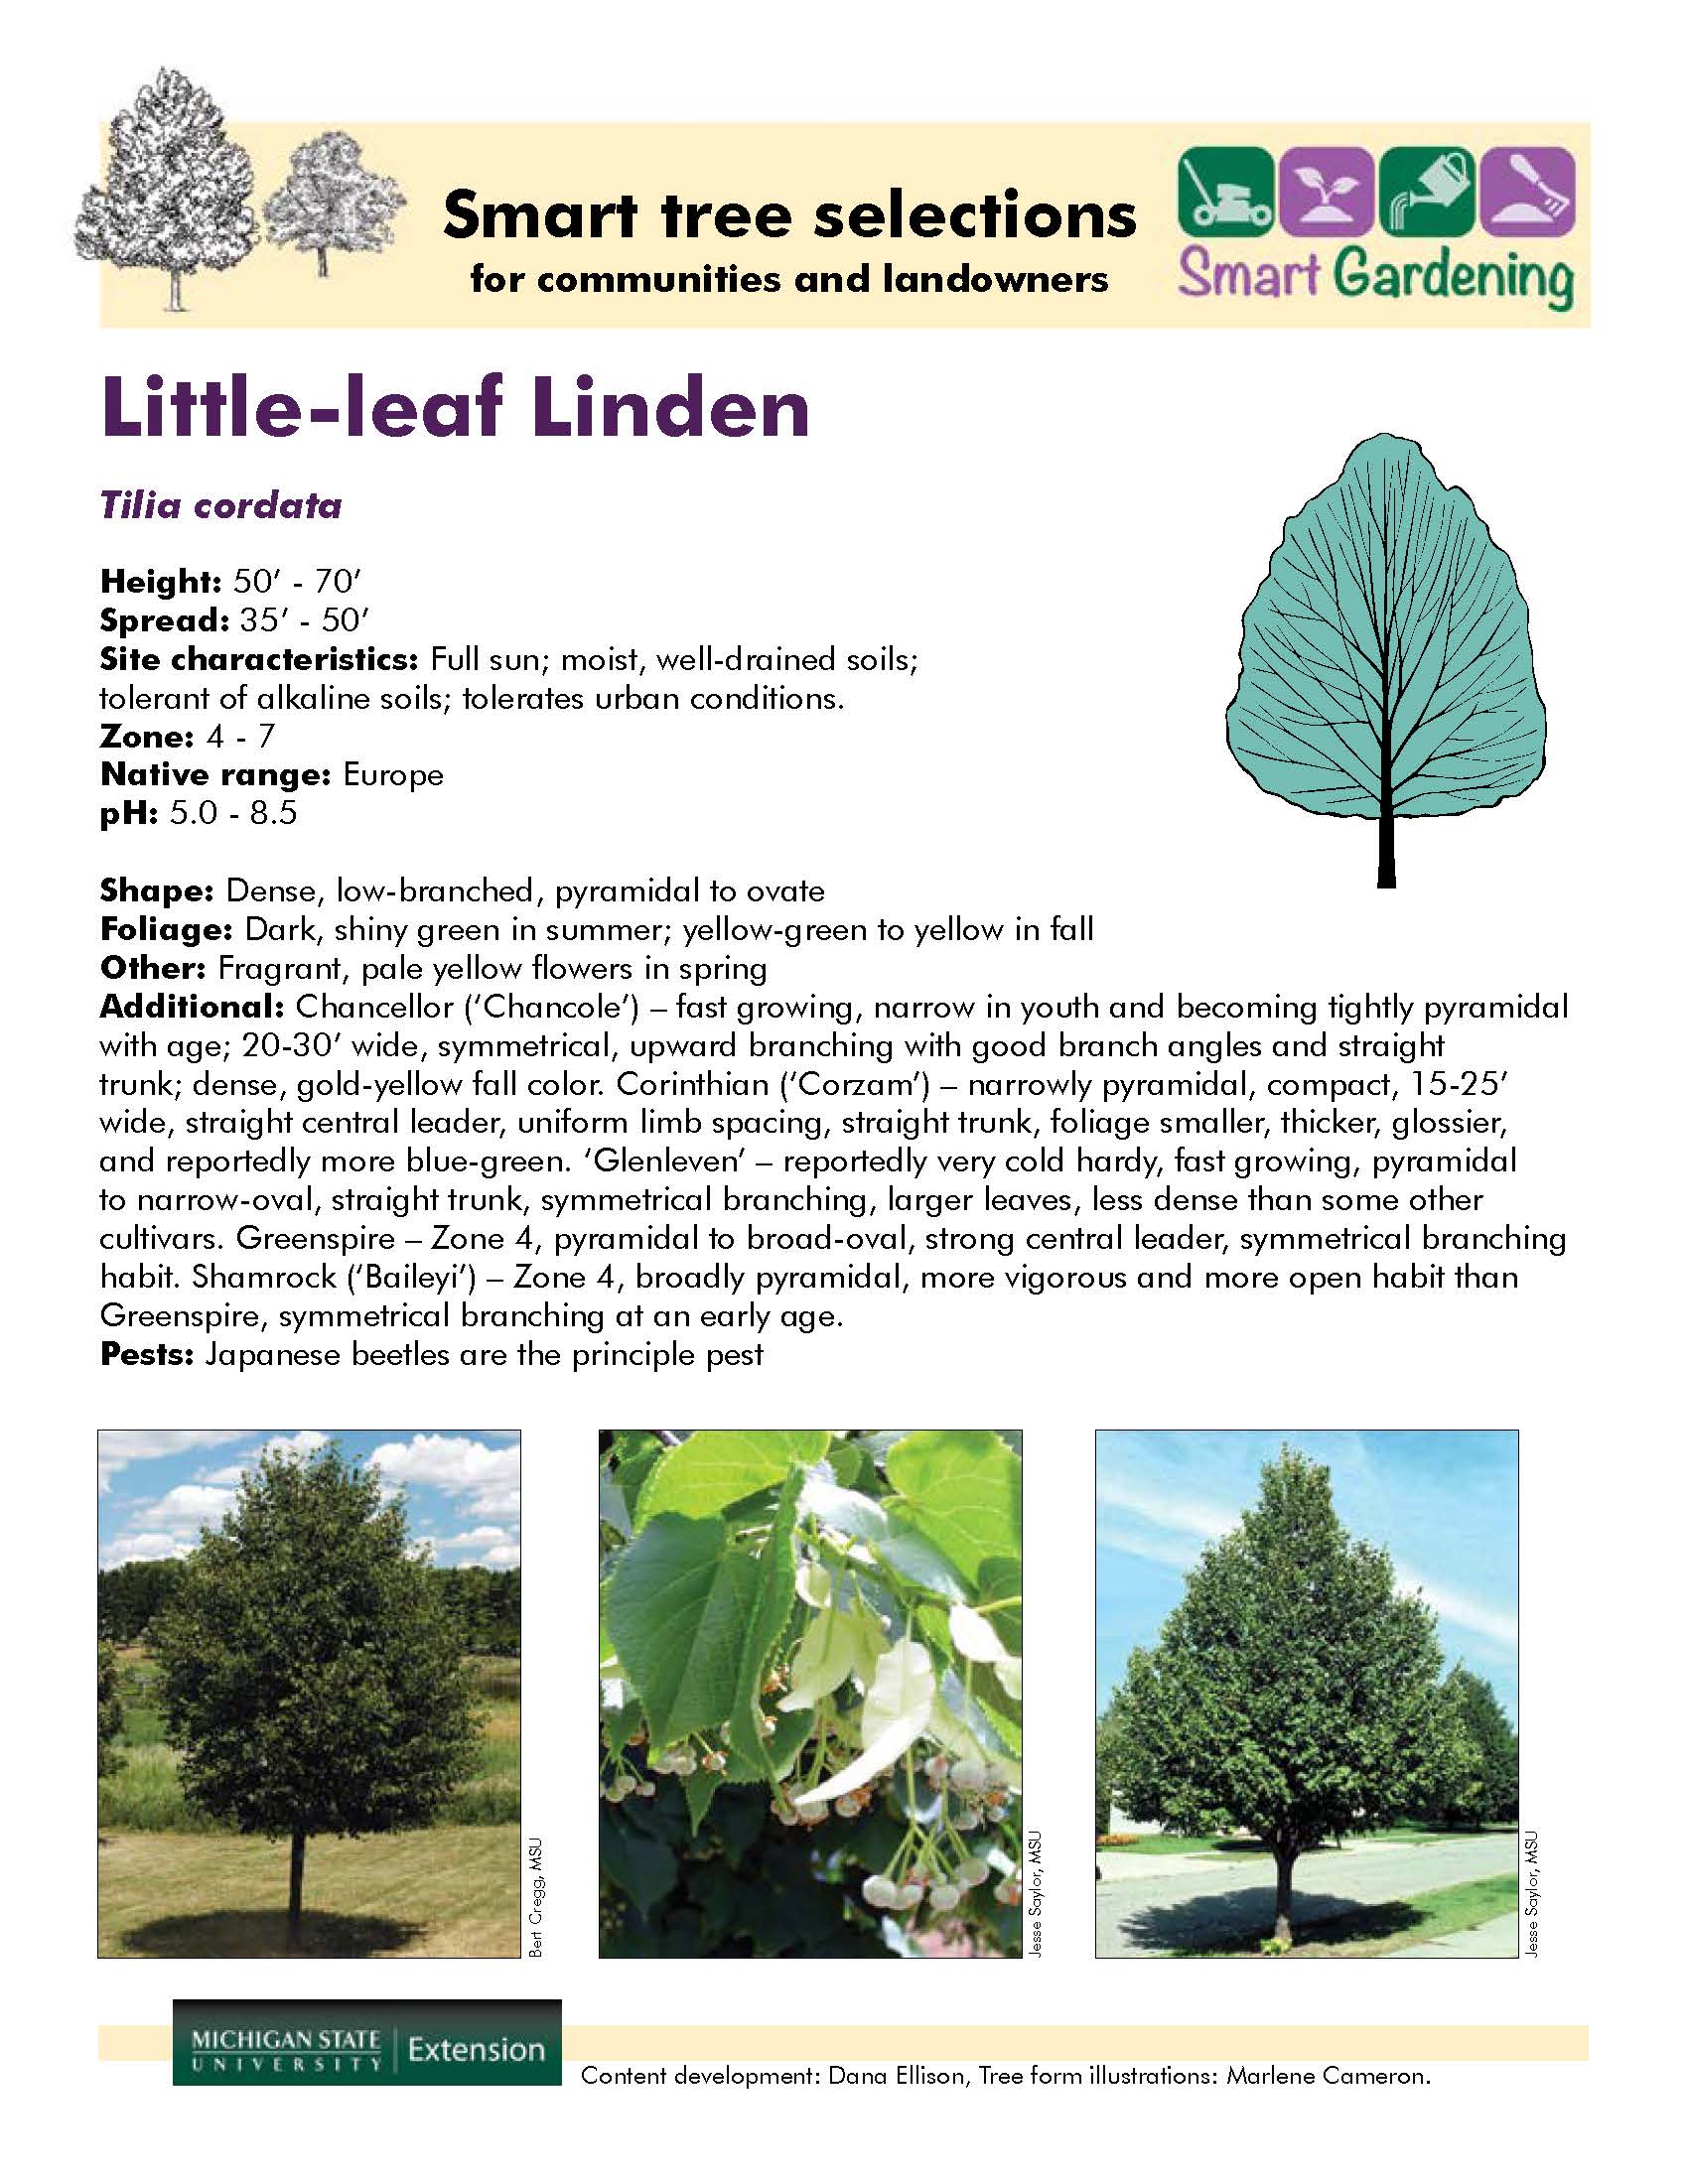 Little-leaf Linden - Gardening in Michigan